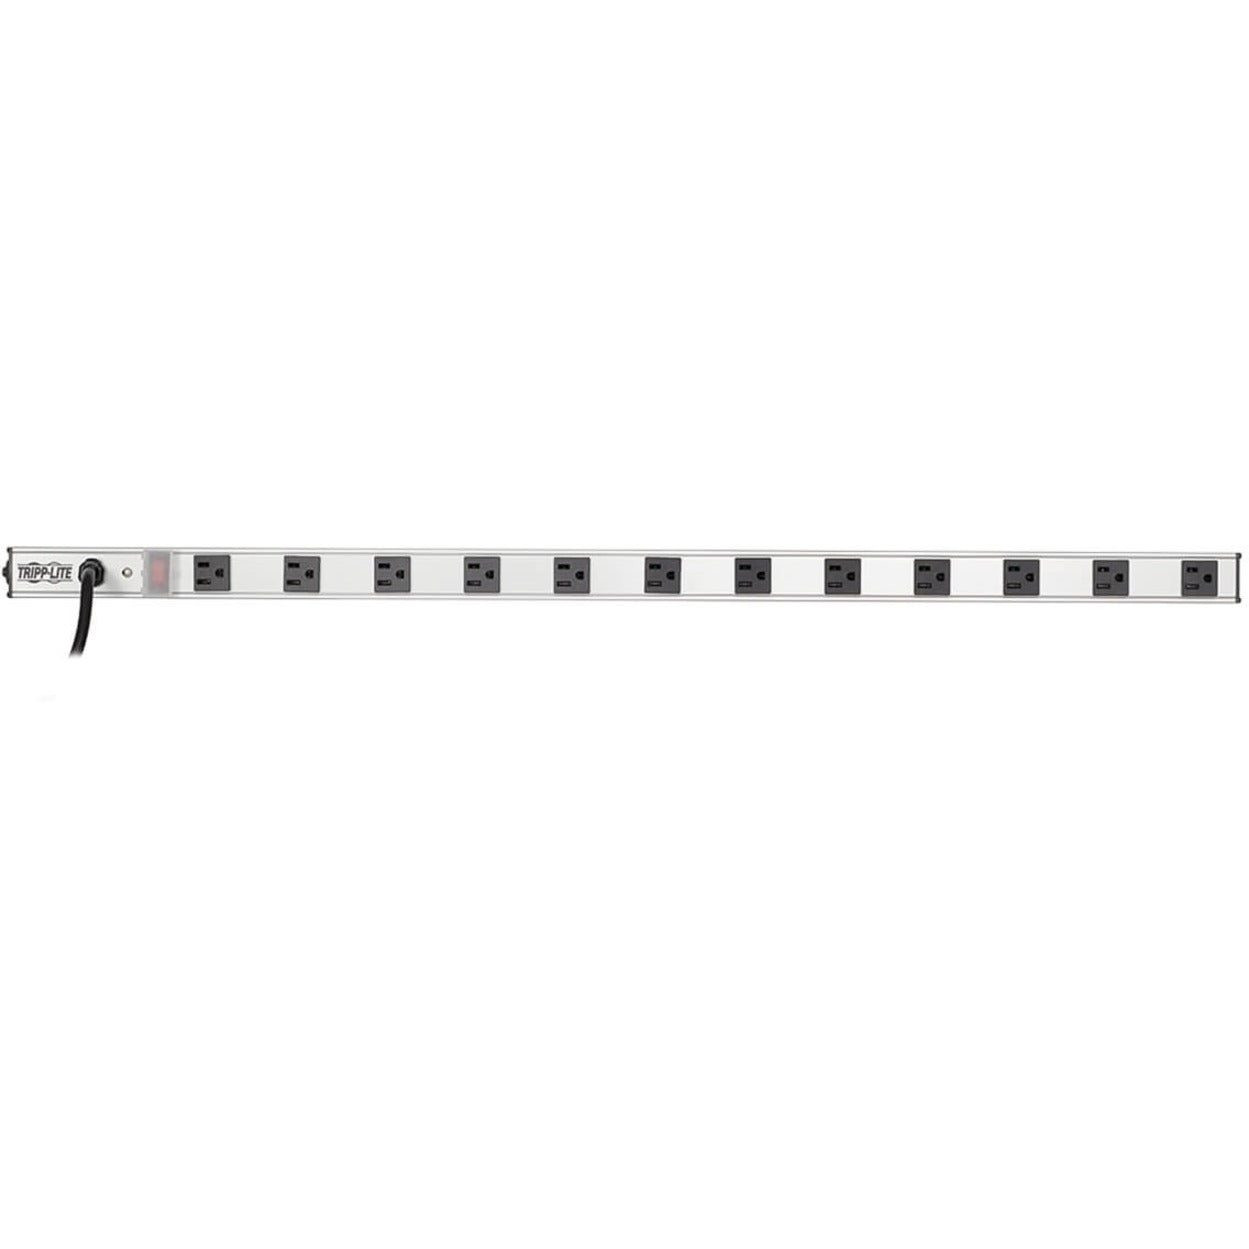 Tripp Lite PS3612 12-Outlet Vertical Power Strip, 120V, 15amp, Black